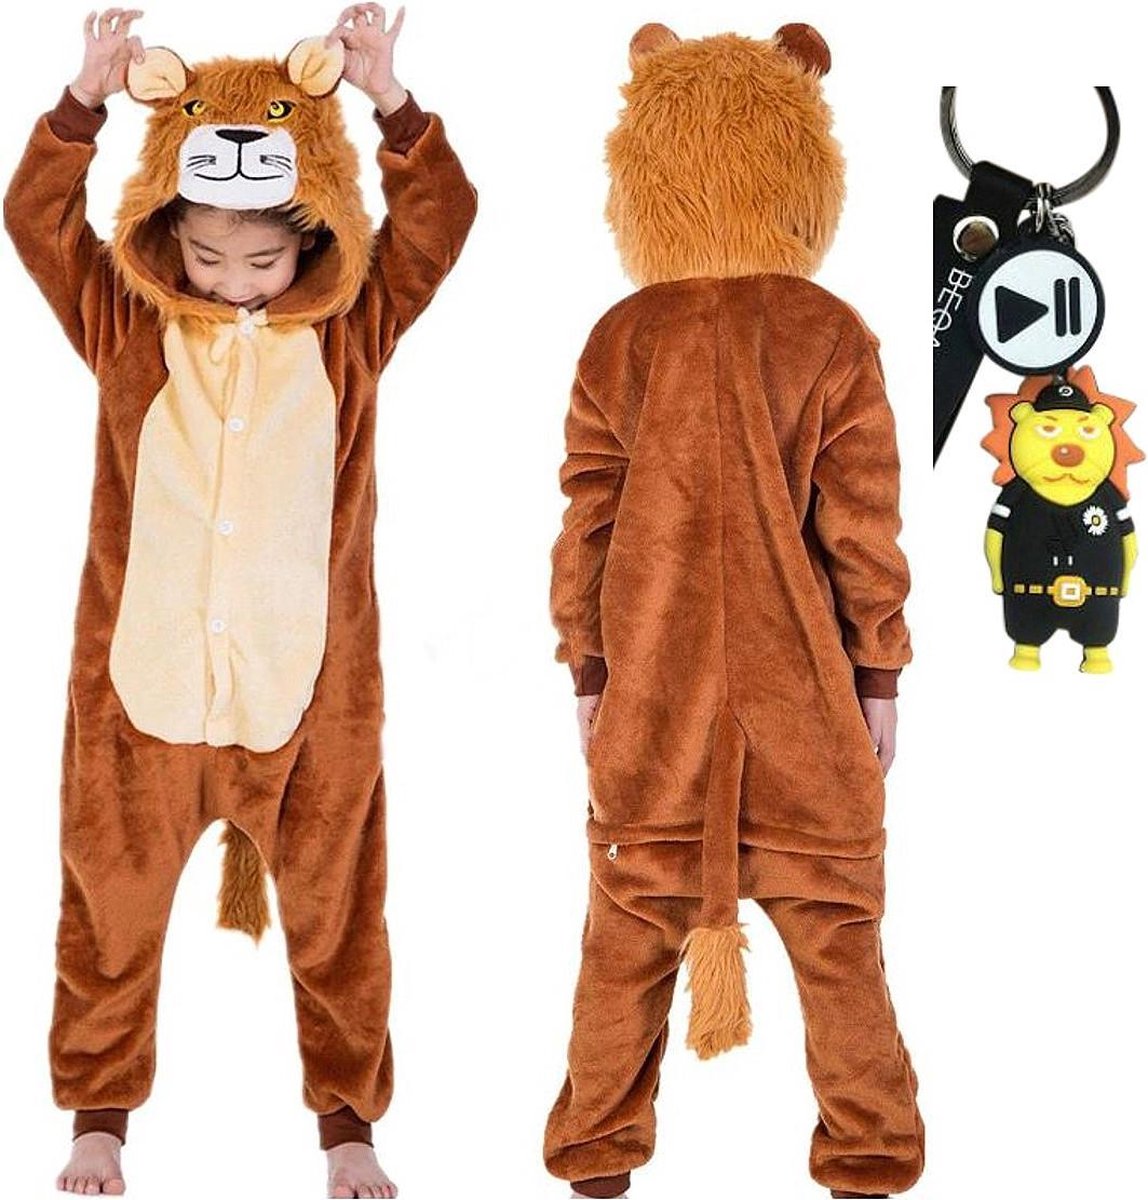 Onesie Leeuw huispak dieren kostuum jumpsuit pyjama kinderen - 116-122 (120) + tas/sleutelhanger verkleedkleding meisjes jongens